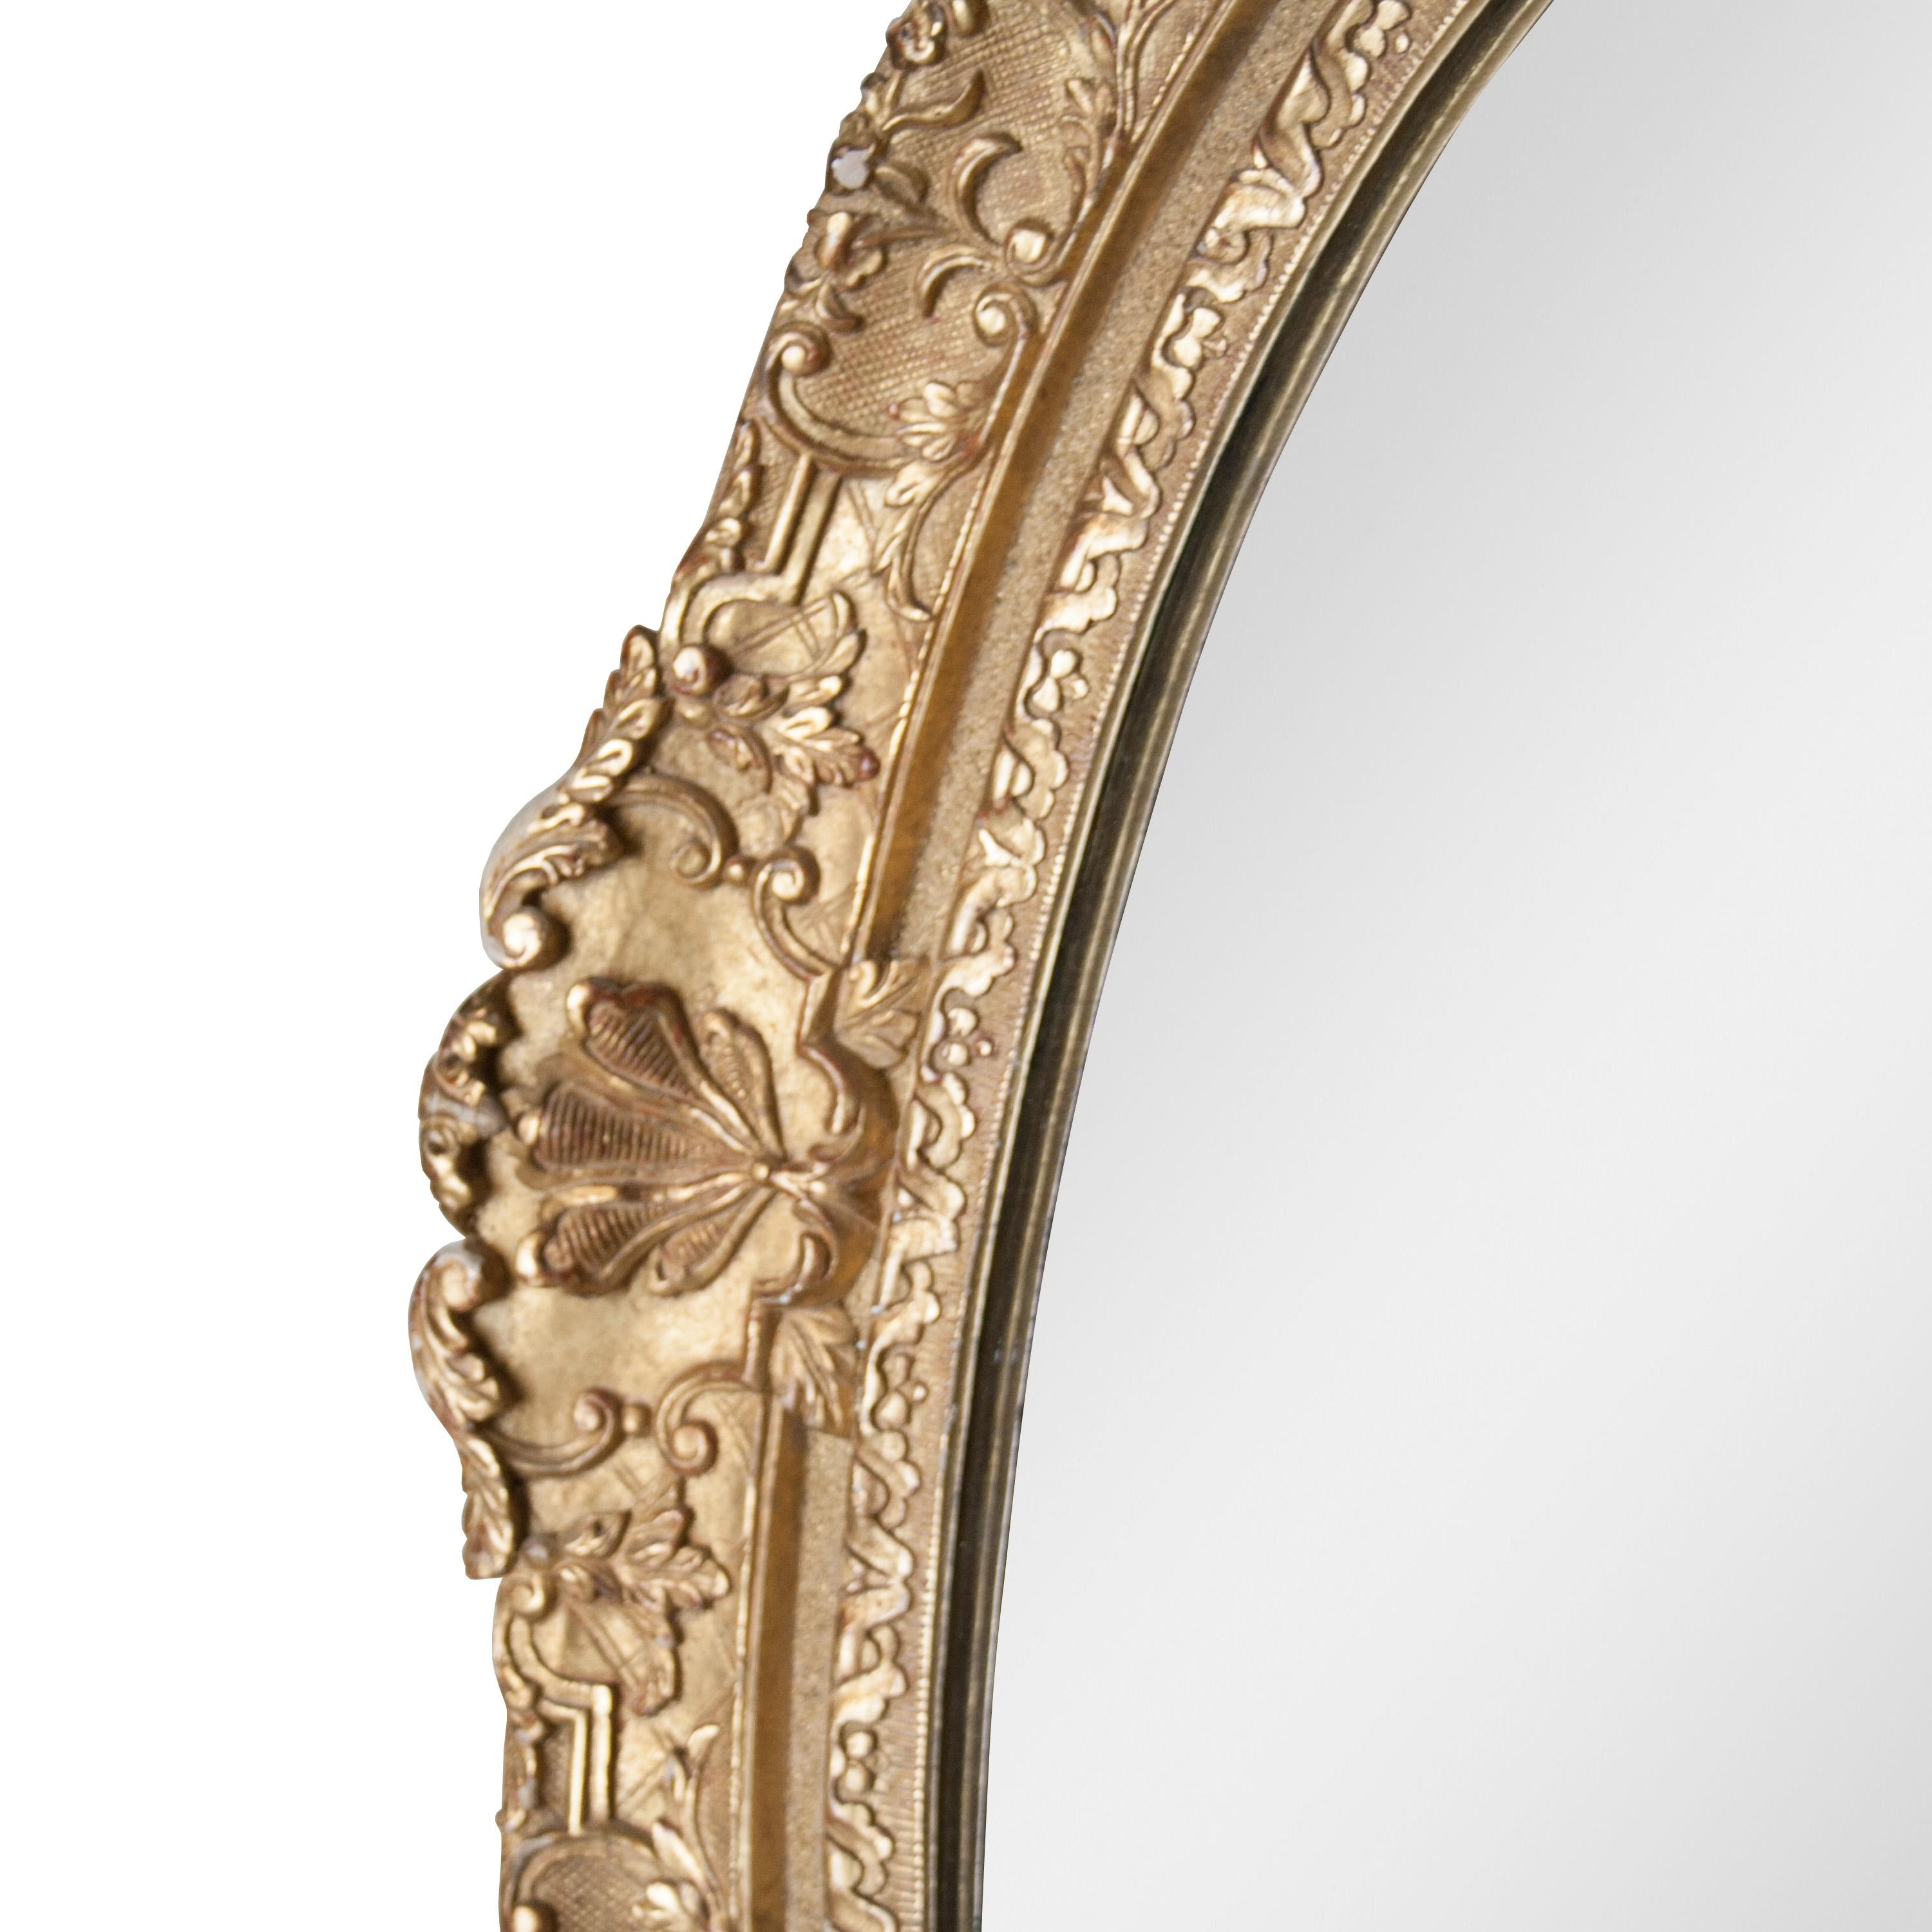 Miroir artisanal de style néoclassique Empire. Structure en bois sculpté à la main de forme ovale avec finition en feuille d'or.
 